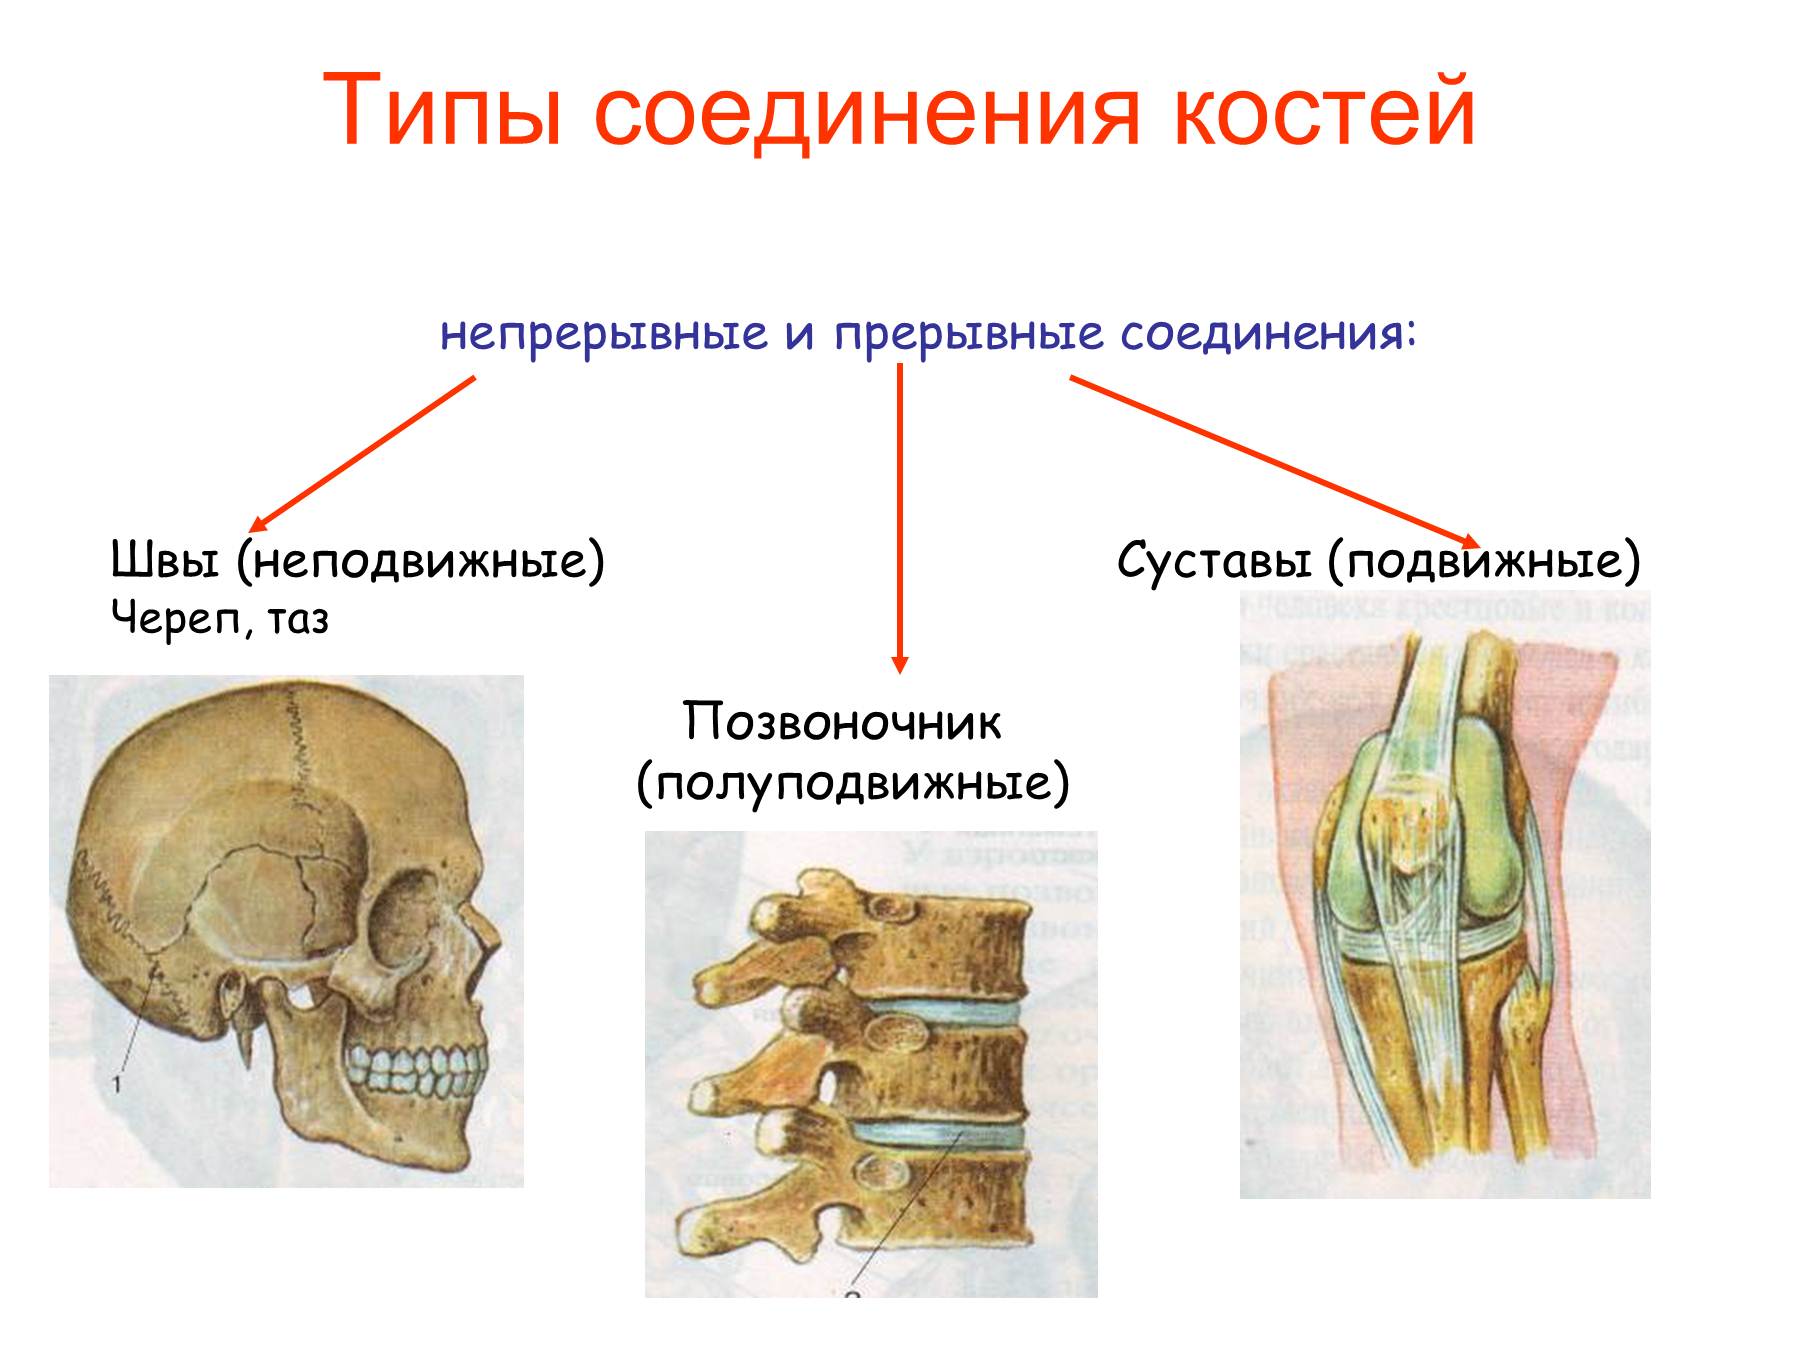 Типы соединения костей сустав. Соединение костей человека непрерывные прерывные. Подвижное полуподвижное и неподвижное соединение костей. Соединения костей непрерывные прерывные симфизы. Неподвижные полуподвижные и подвижные соединения костей.